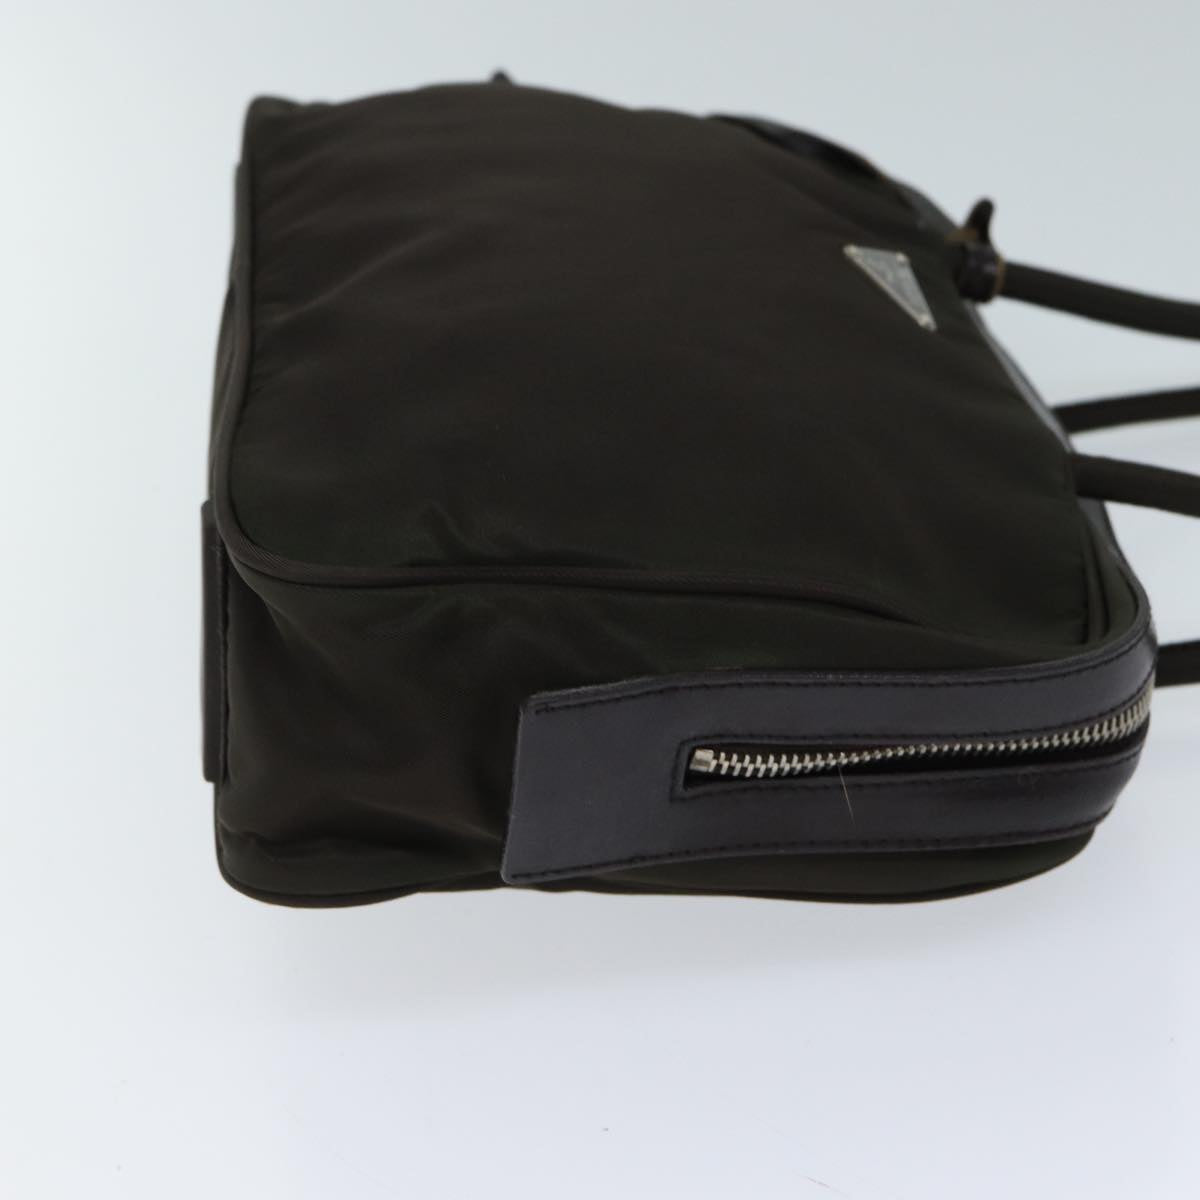 PRADA Hand Bag Nylon Khaki Auth 71862